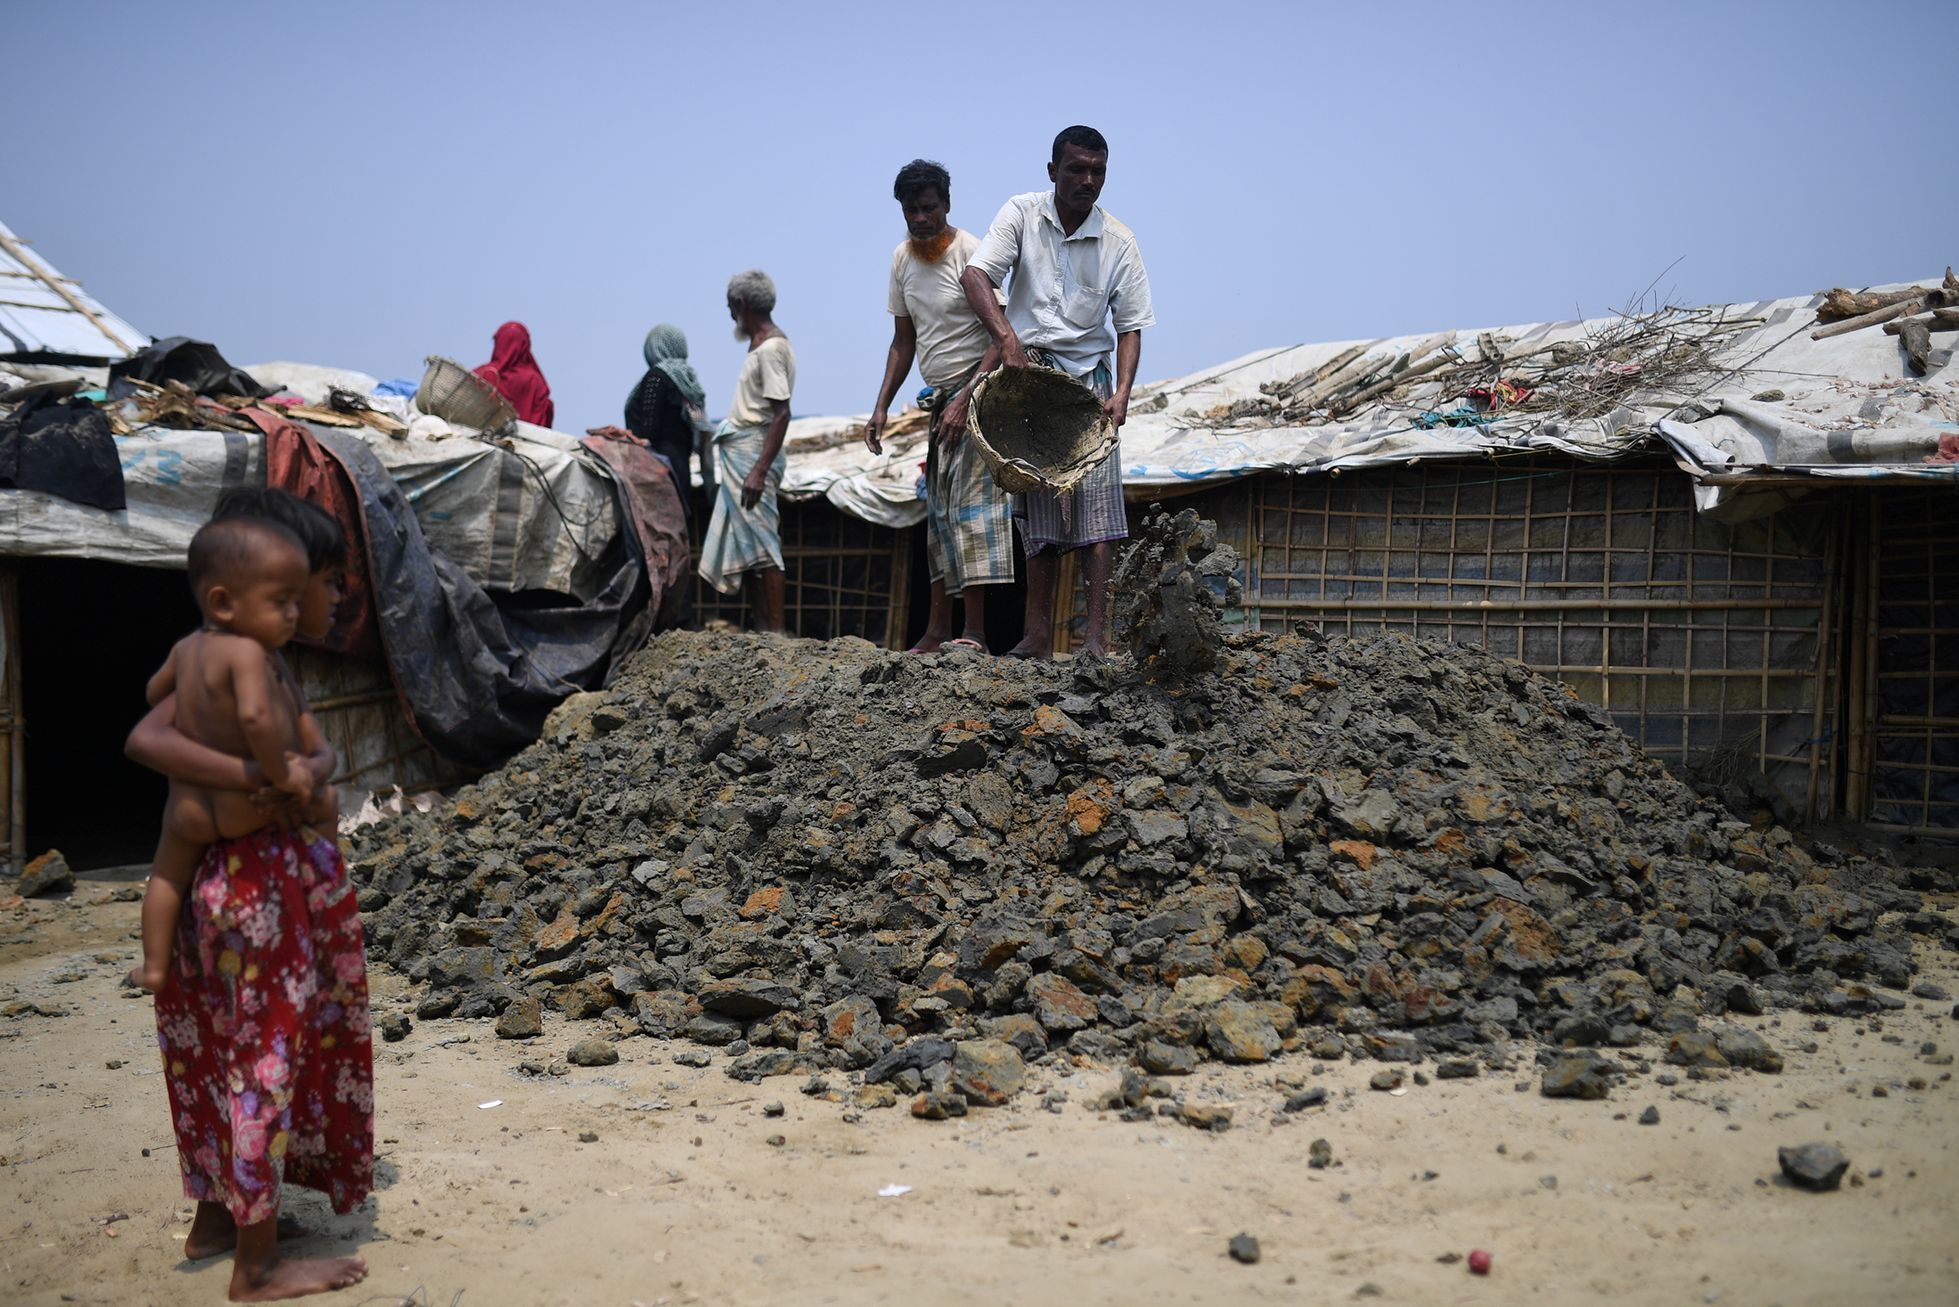 Fotogalerie / Rohingové v Bangladéši / Reuters / 29